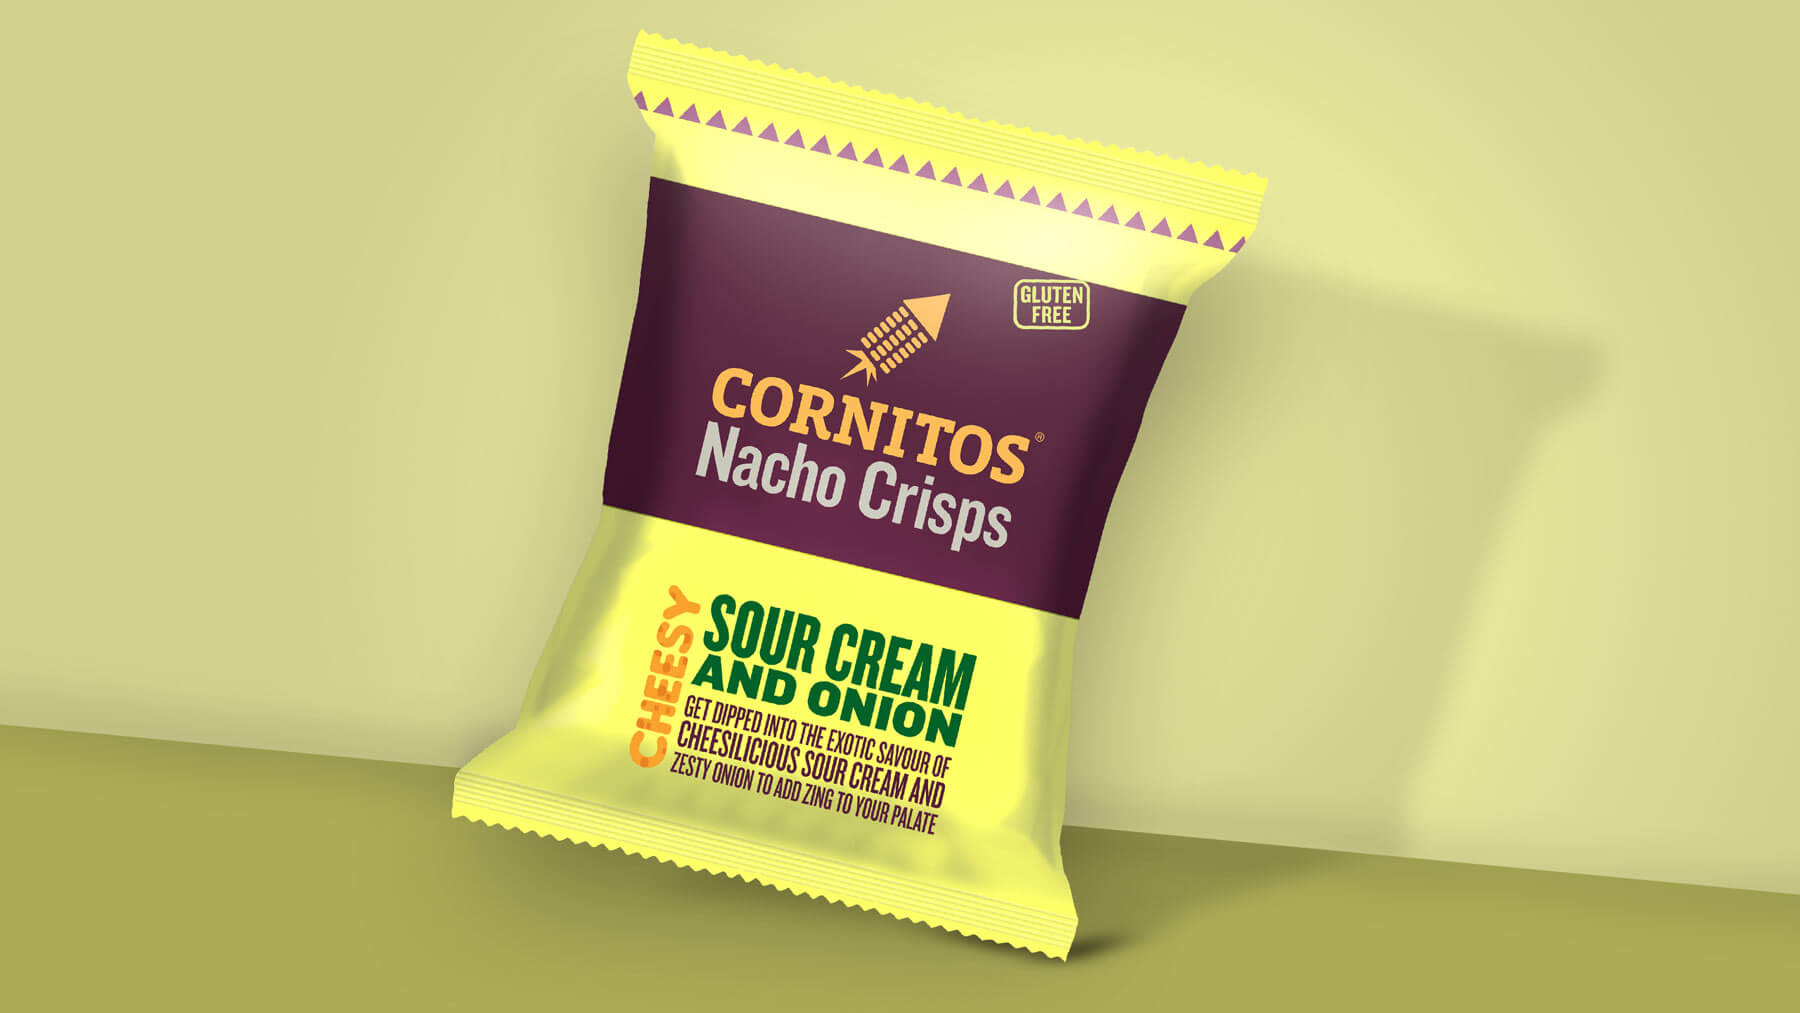 cornitos-nachos-crisps-packaging